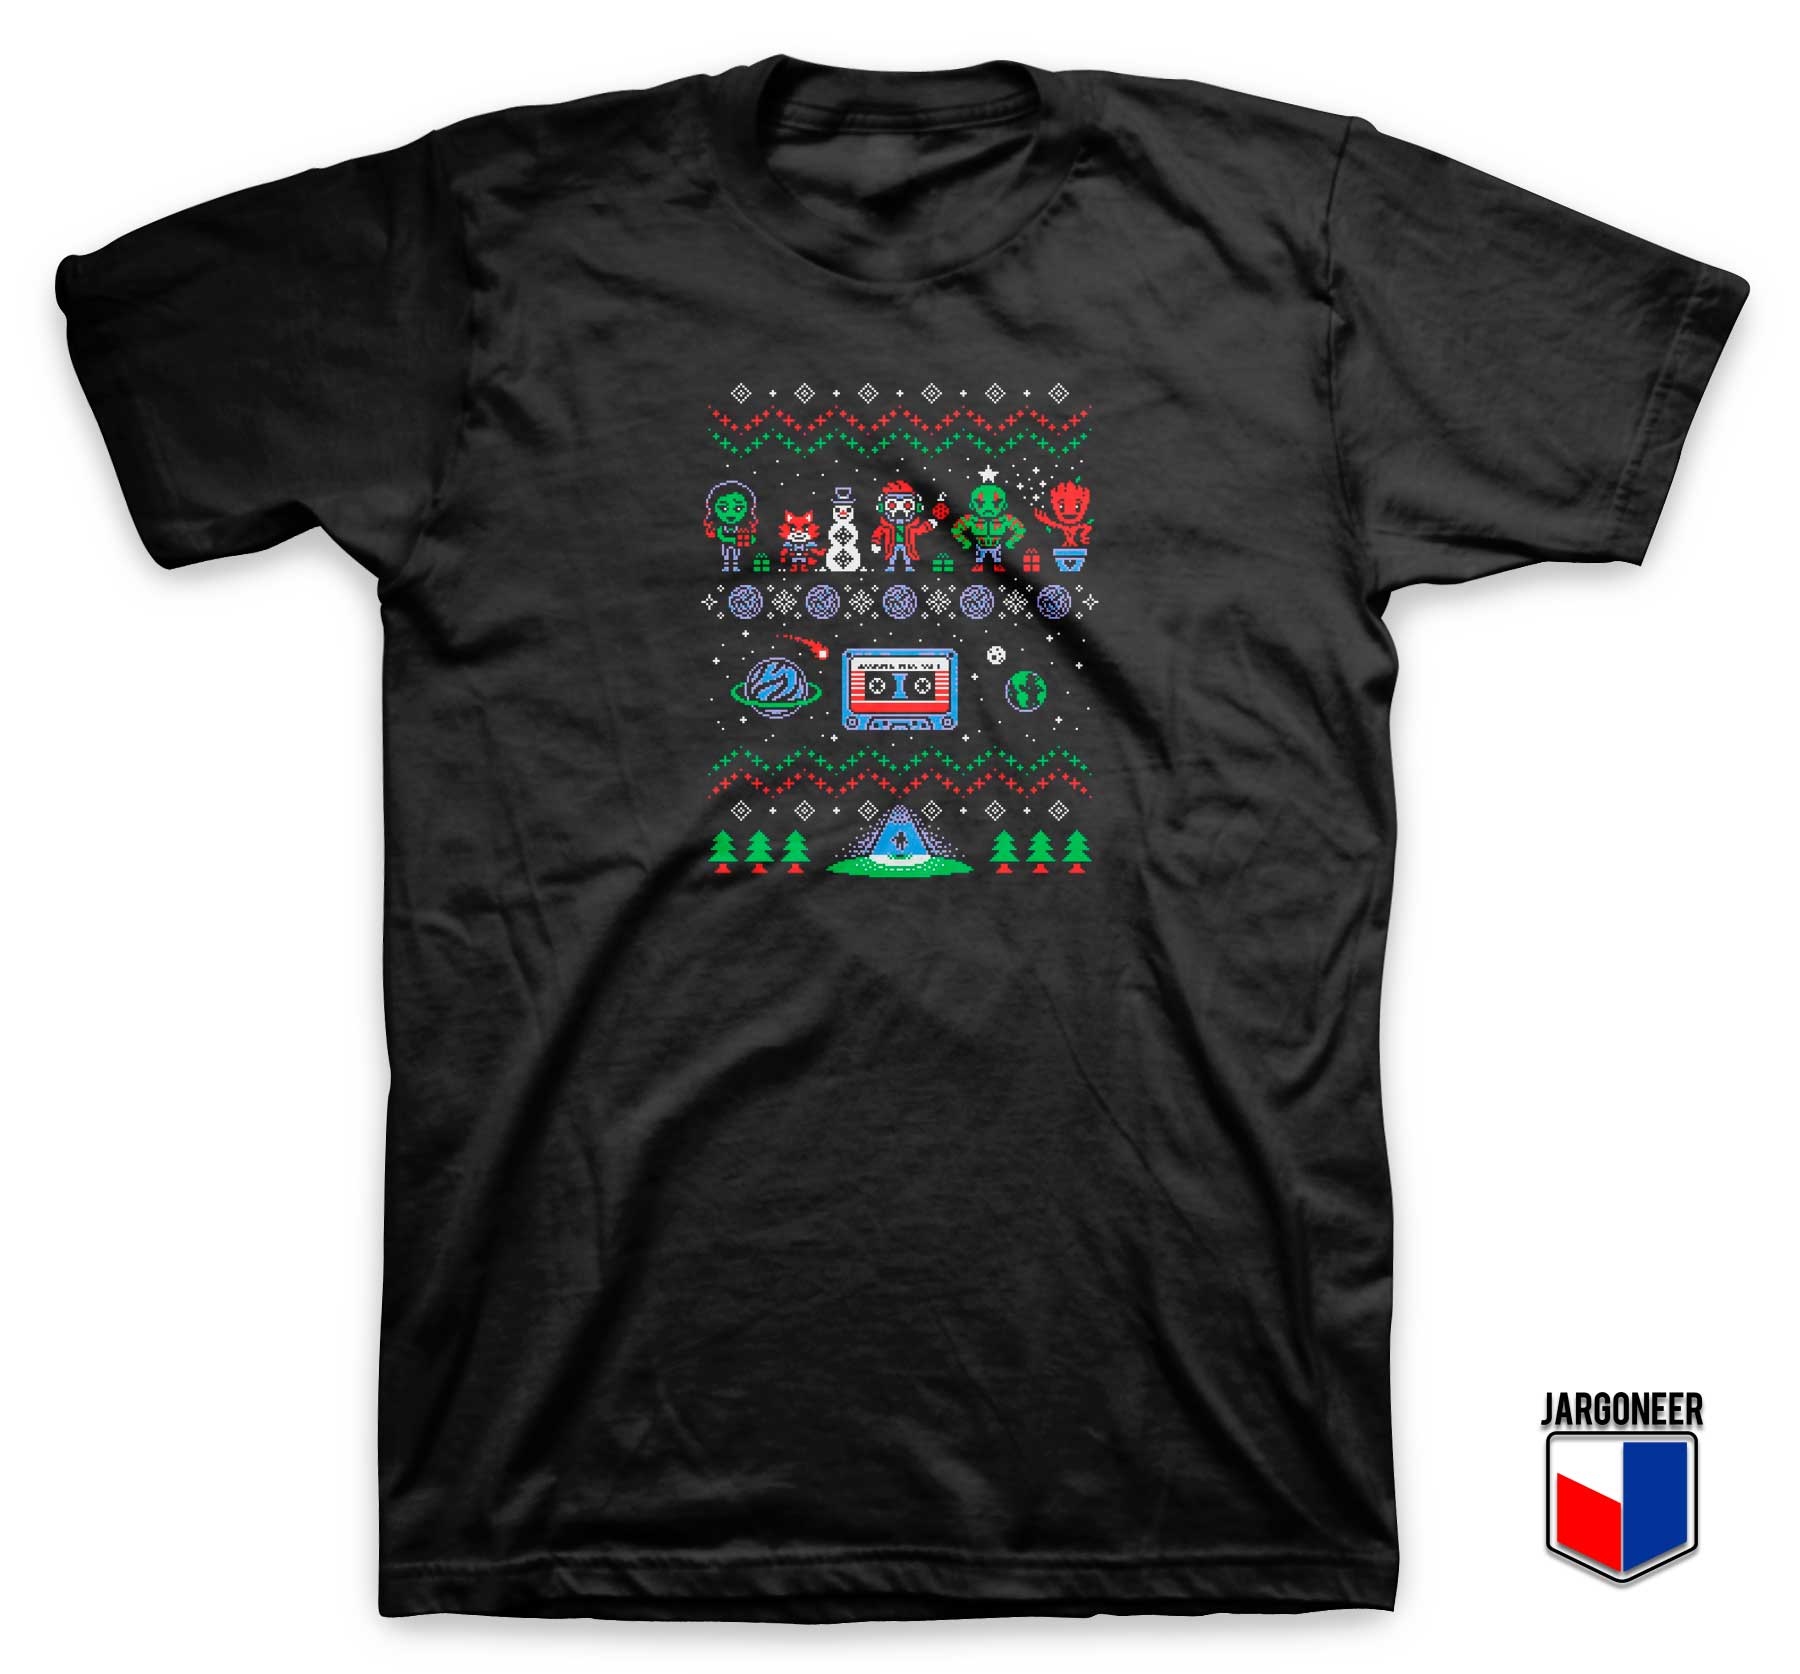 Avengers Ugly Christmas T Shirt - Shop Unique Graphic Cool Shirt Designs